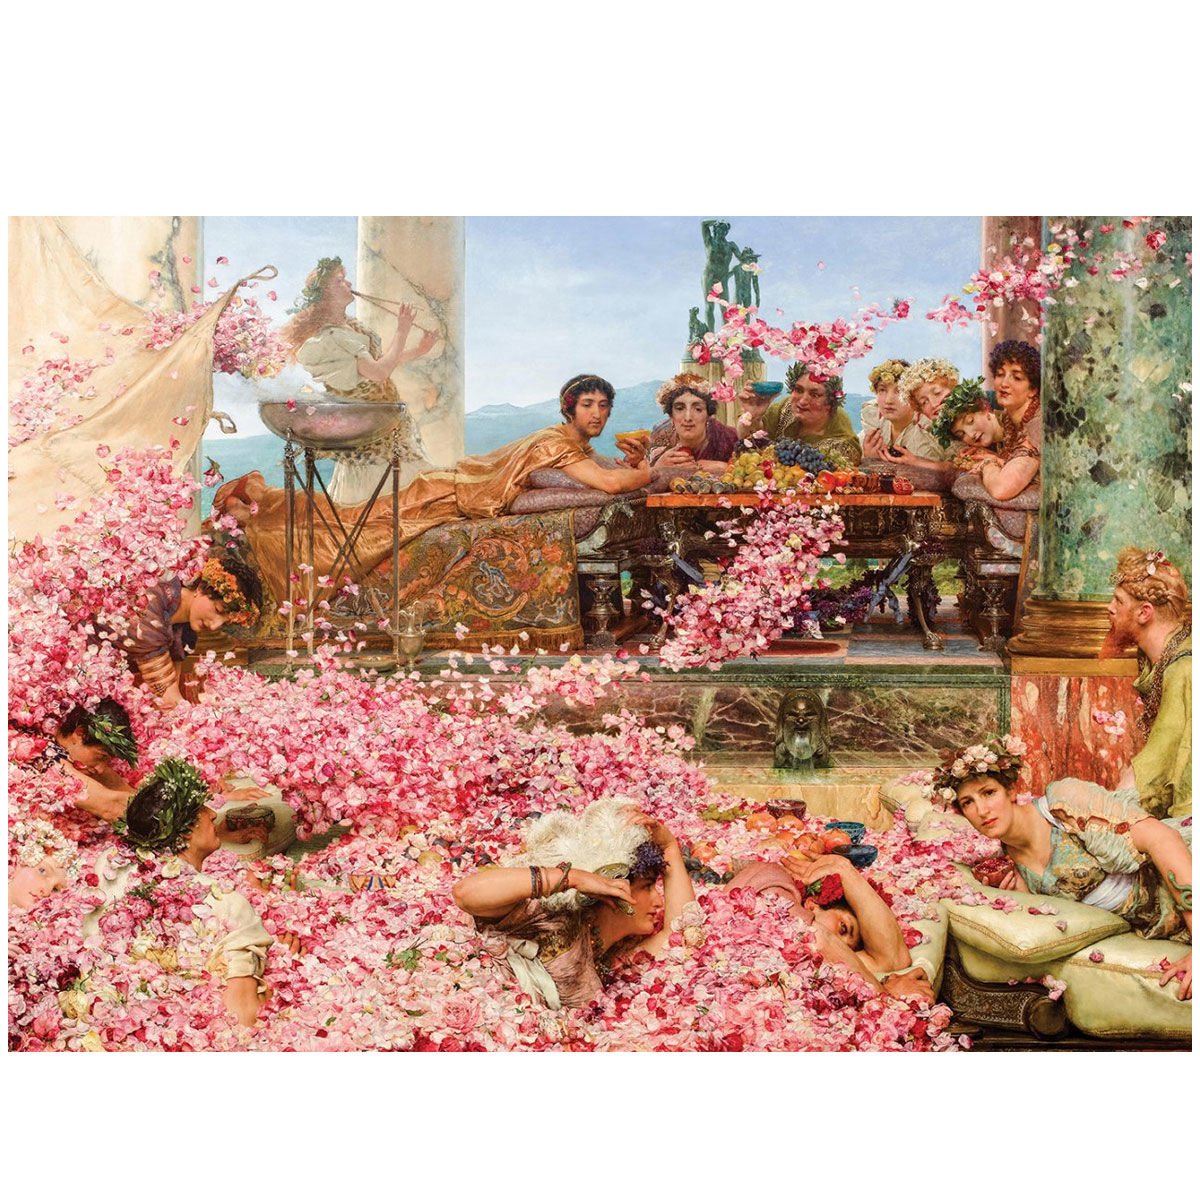 5398 Gül Bahçesi 1500 Parça - Art Puzzle